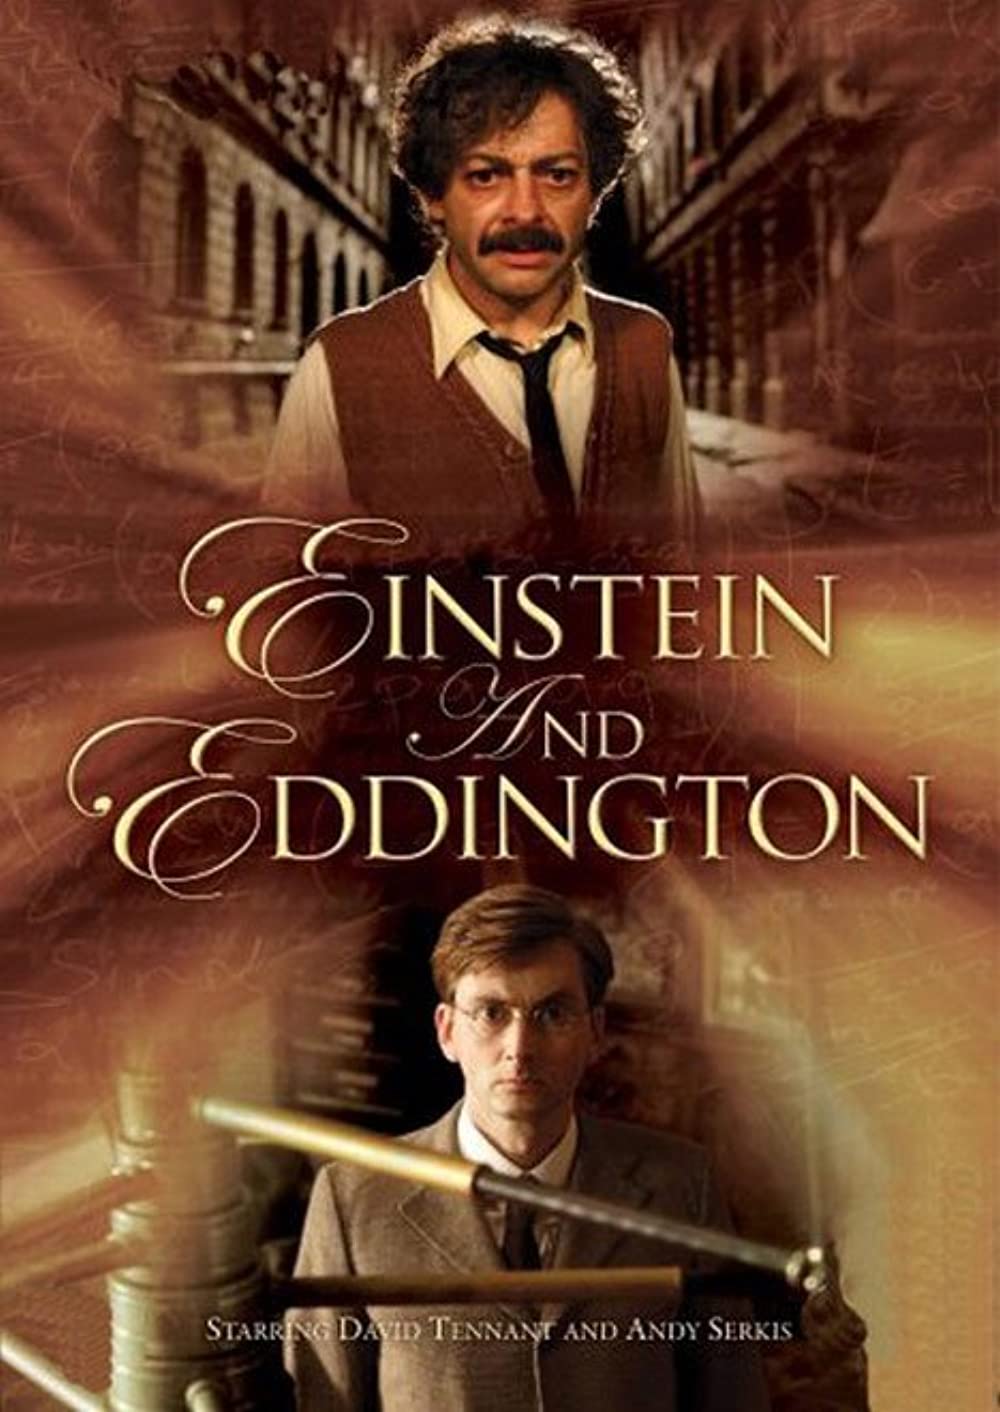 ดูหนังออนไลน์ฟรี Einstein and Eddington (2008) ไอน์สไตน์&เอ็ดดิงตัน คู่นักวิทย์พิศจักรวาล หนังเต็มเรื่อง หนังมาสเตอร์ ดูหนังHD ดูหนังออนไลน์ ดูหนังใหม่